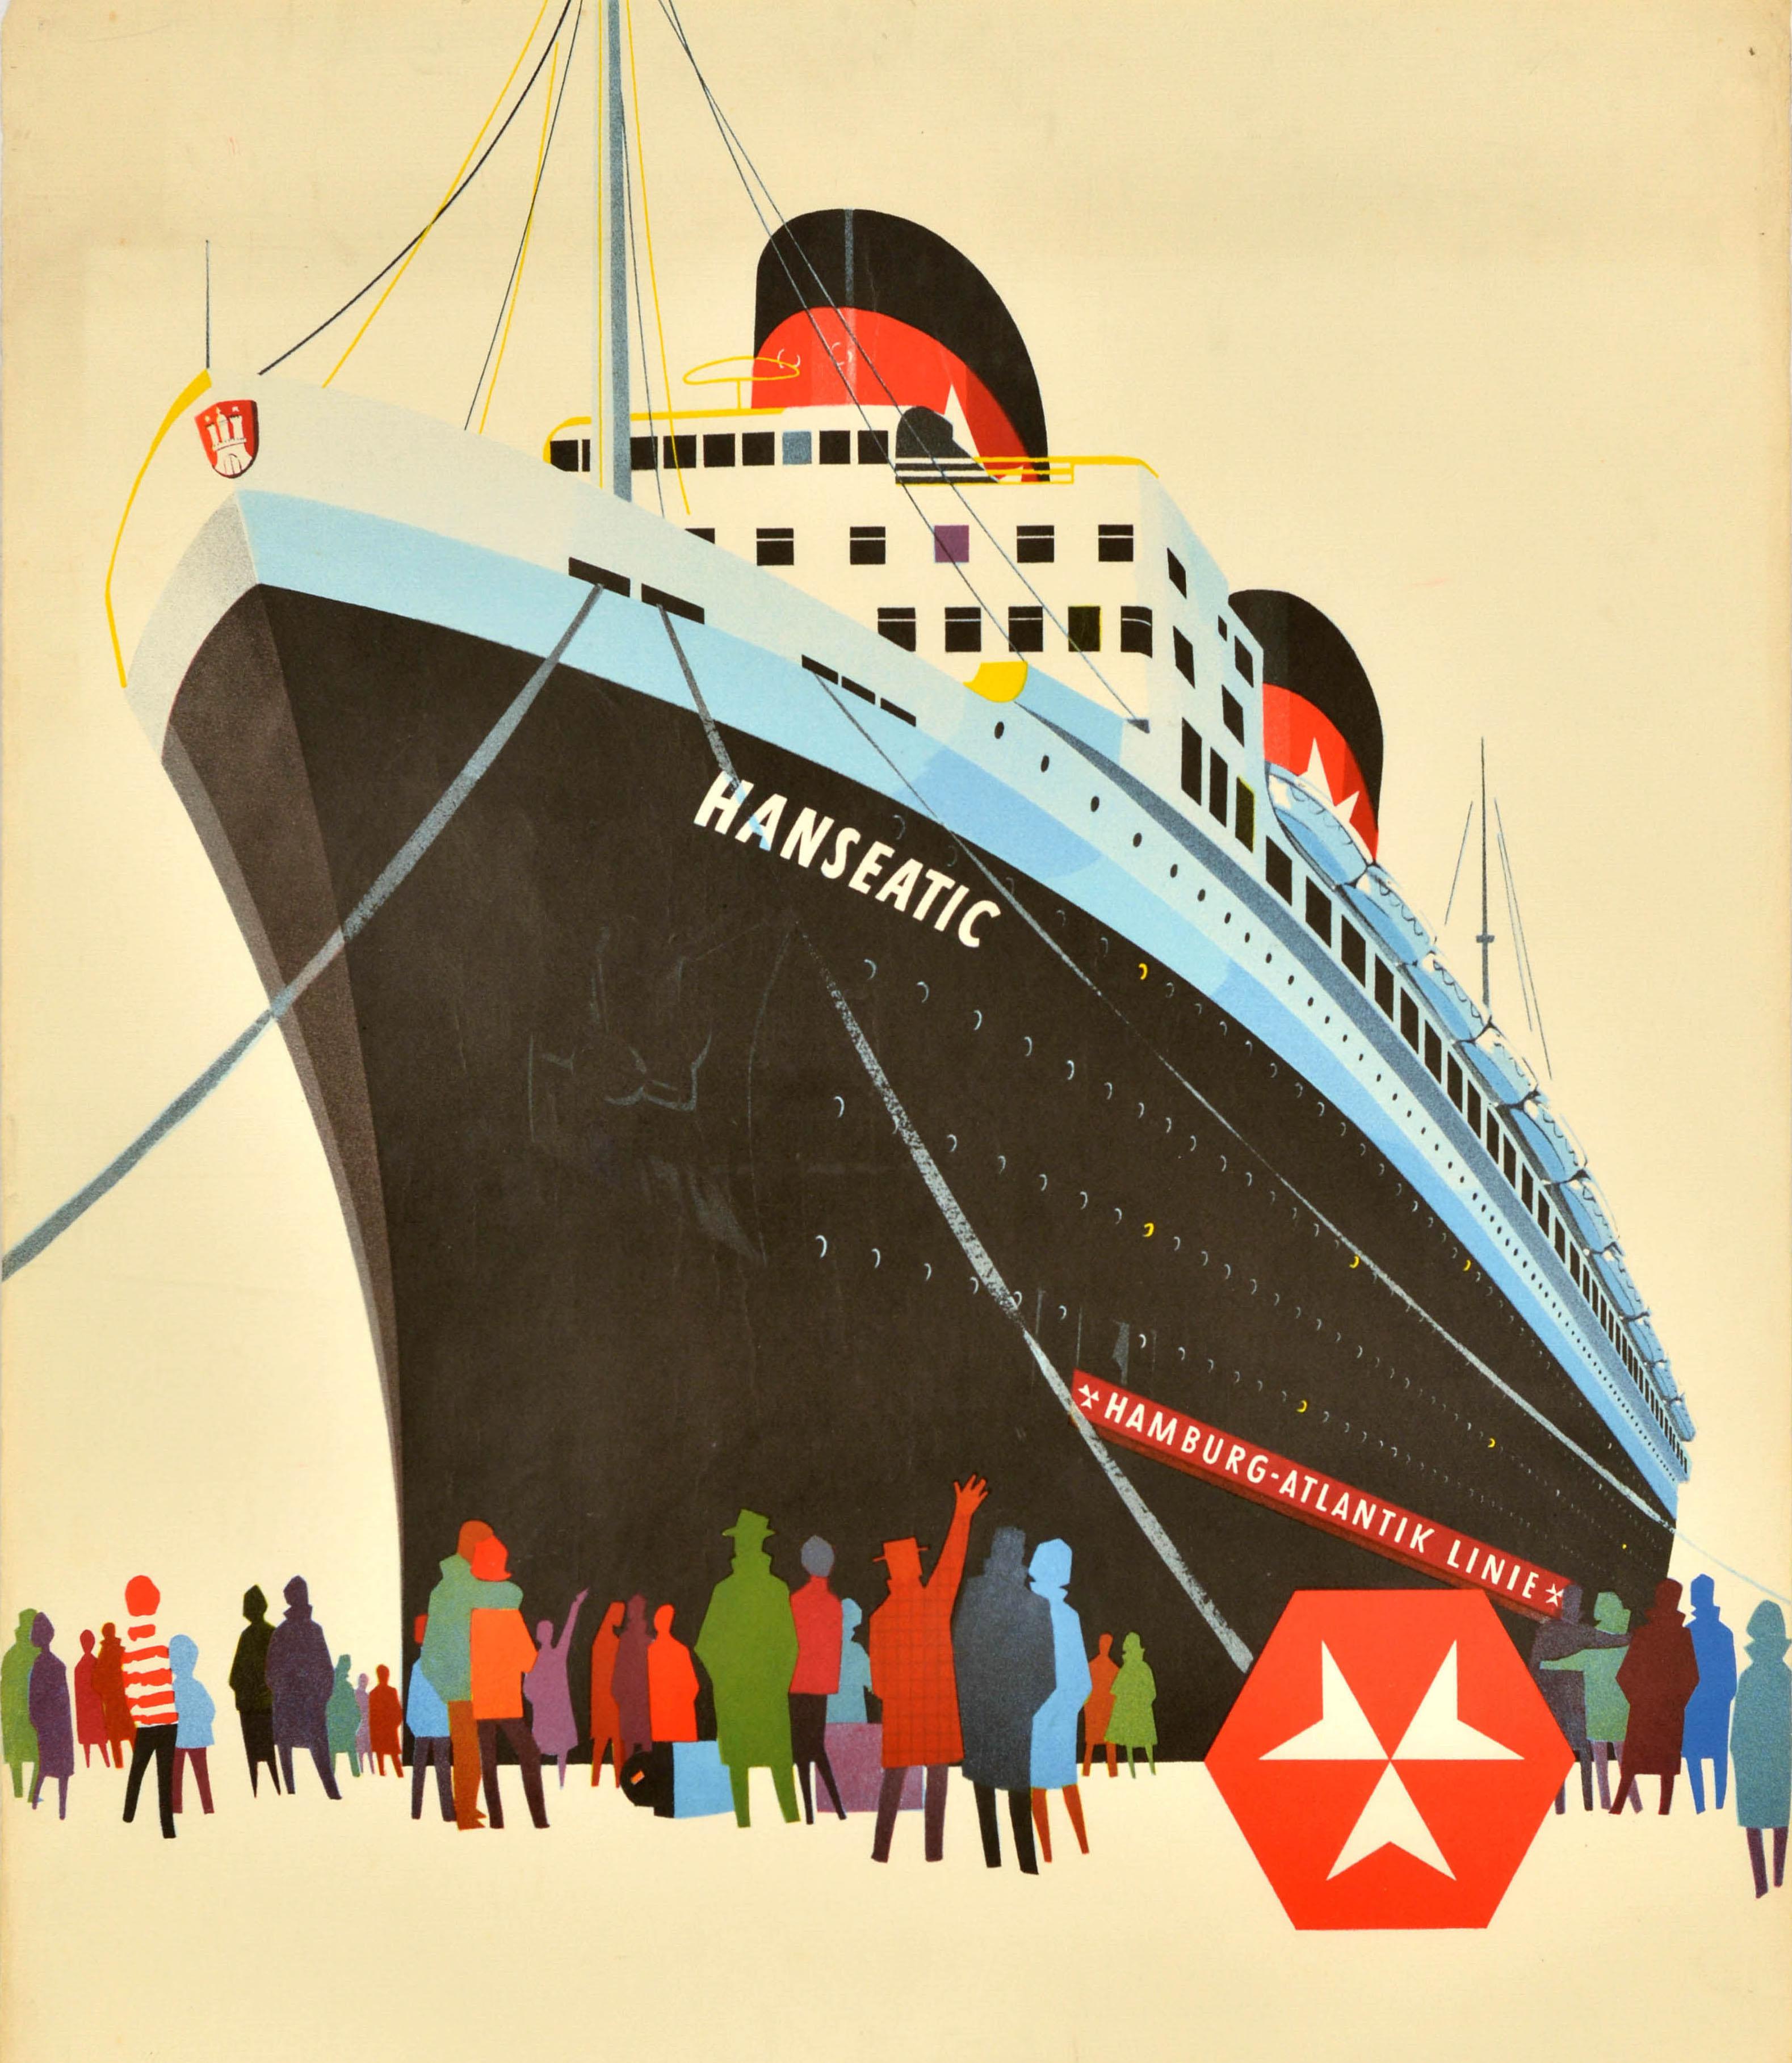 Original-Vintage-Reiseplakat Hamburg Atlantic Line, Hanseatic USA, Kreuzfahrtschiff – Print von Unknown